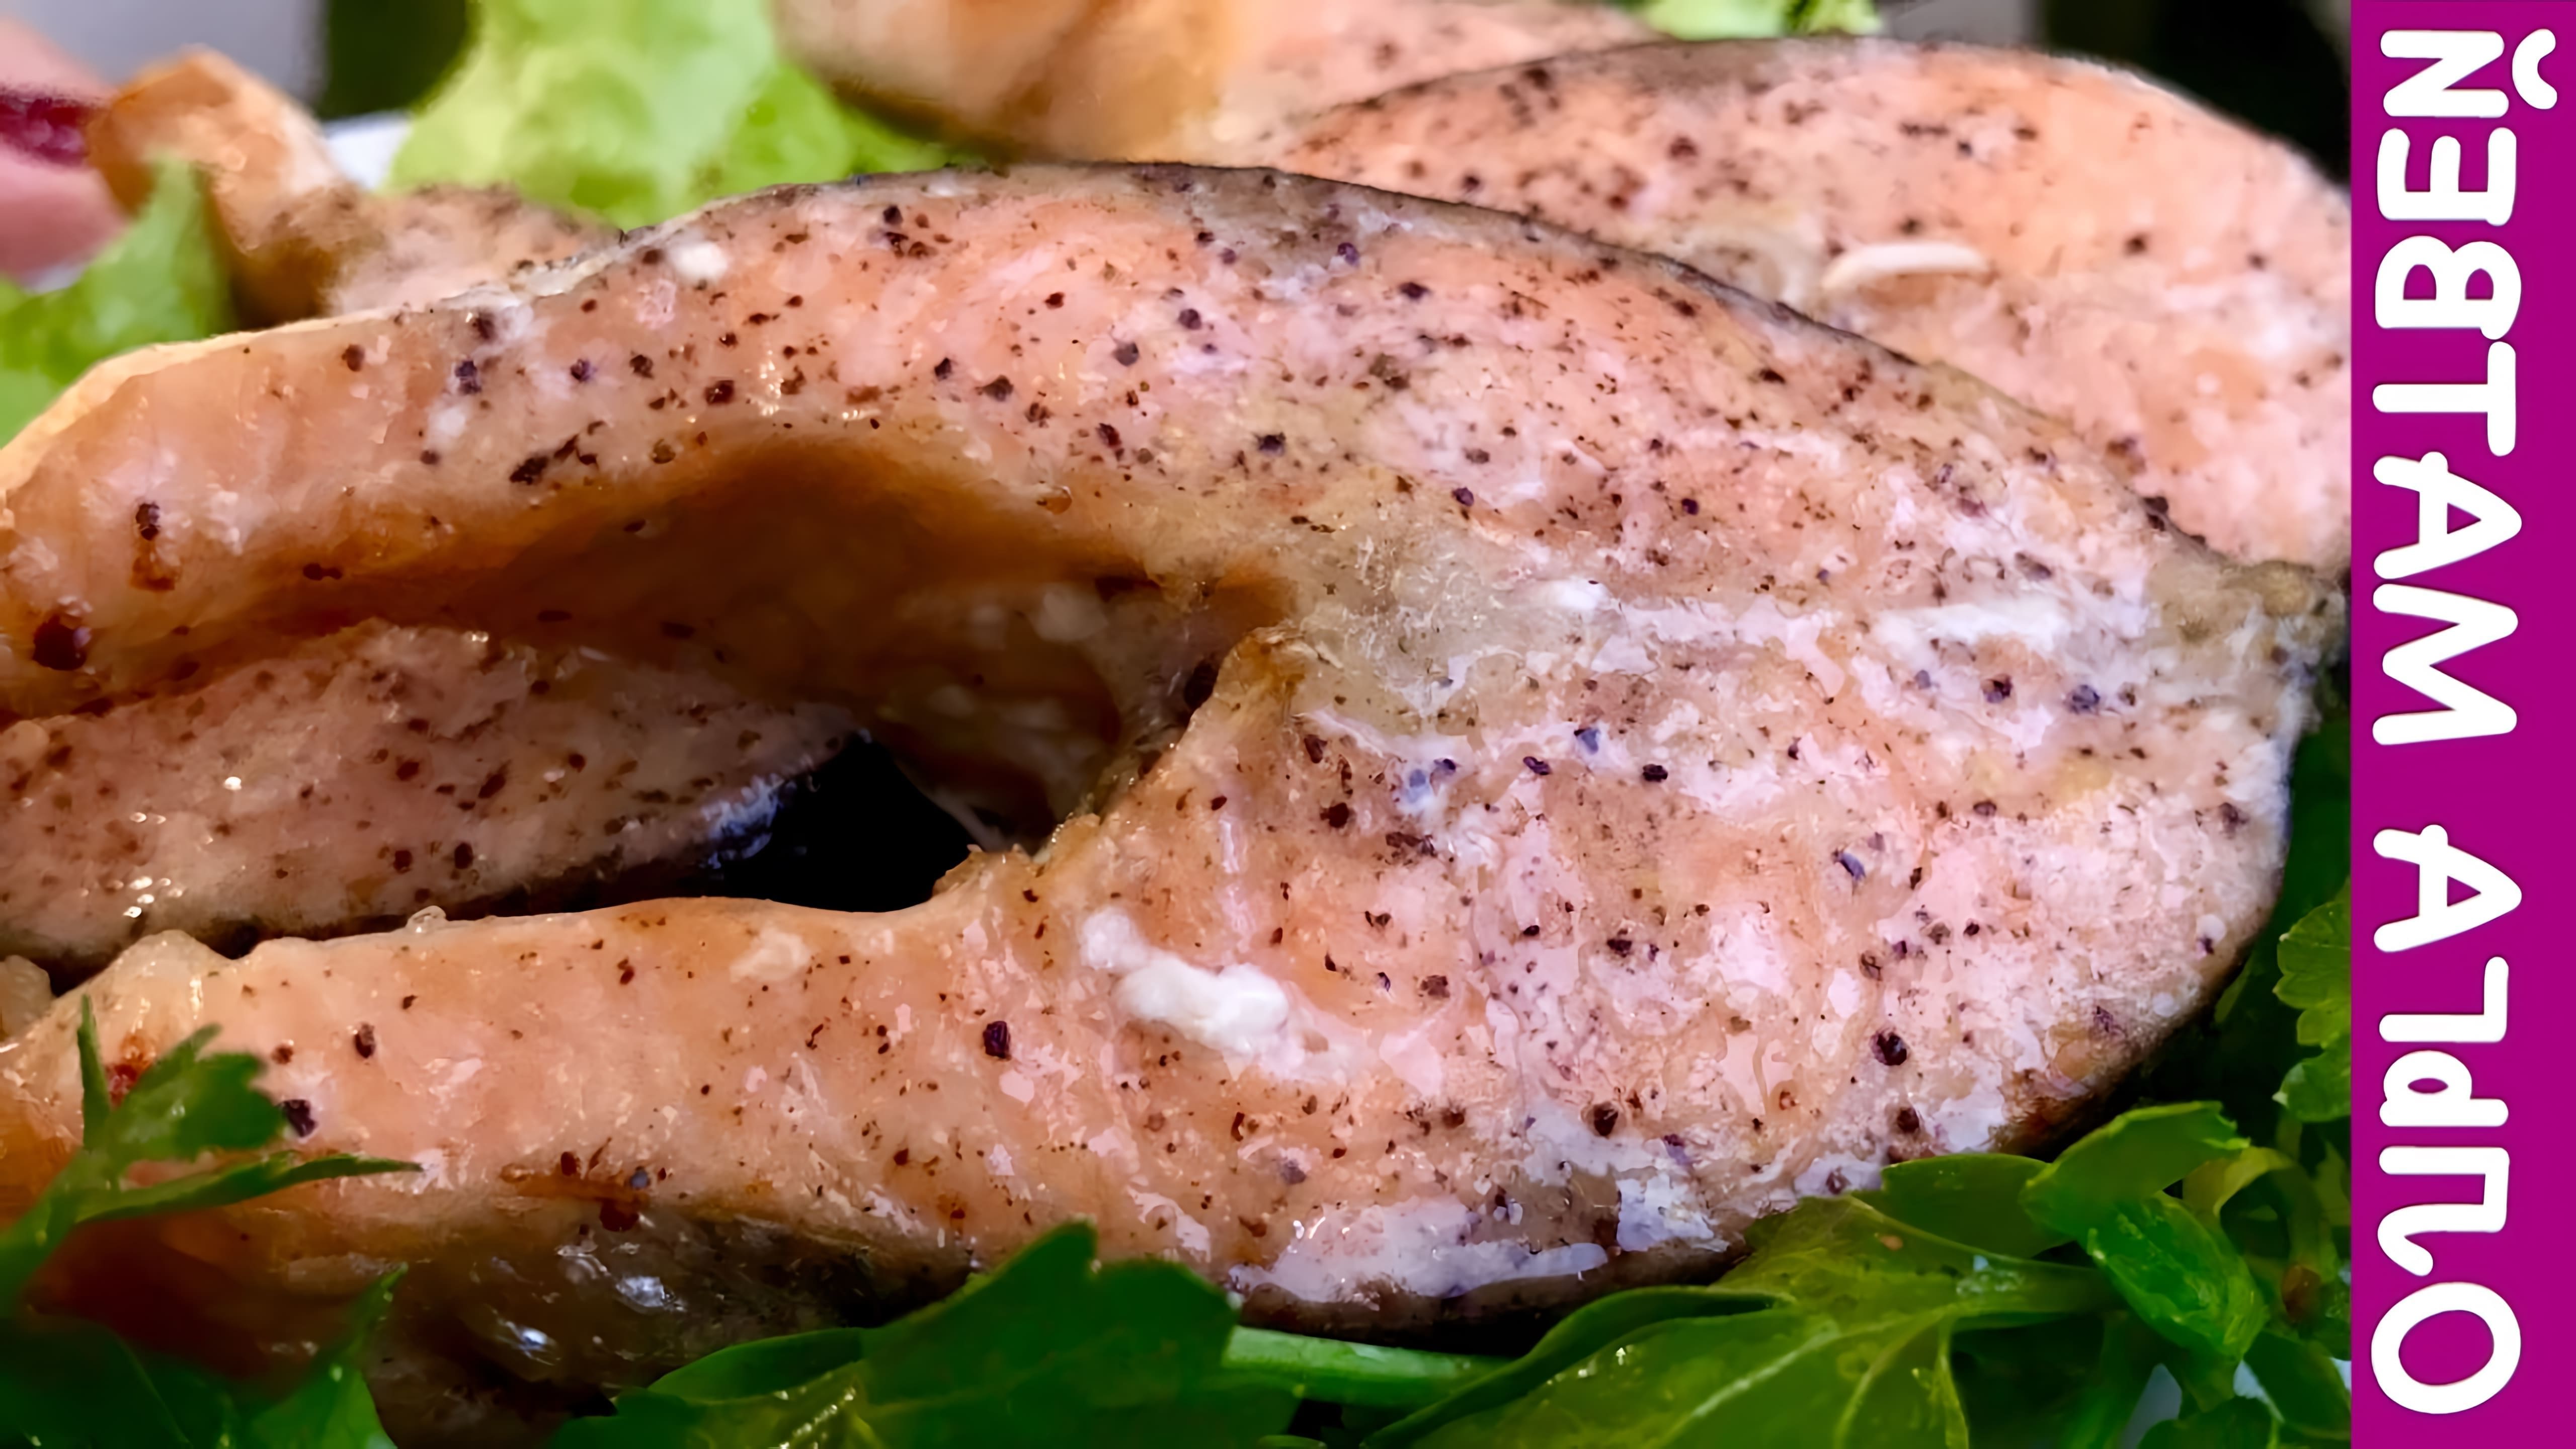 Видео простой и быстрый рецепт для приготовления лососевых стейков с минимальным количеством ингредиентов